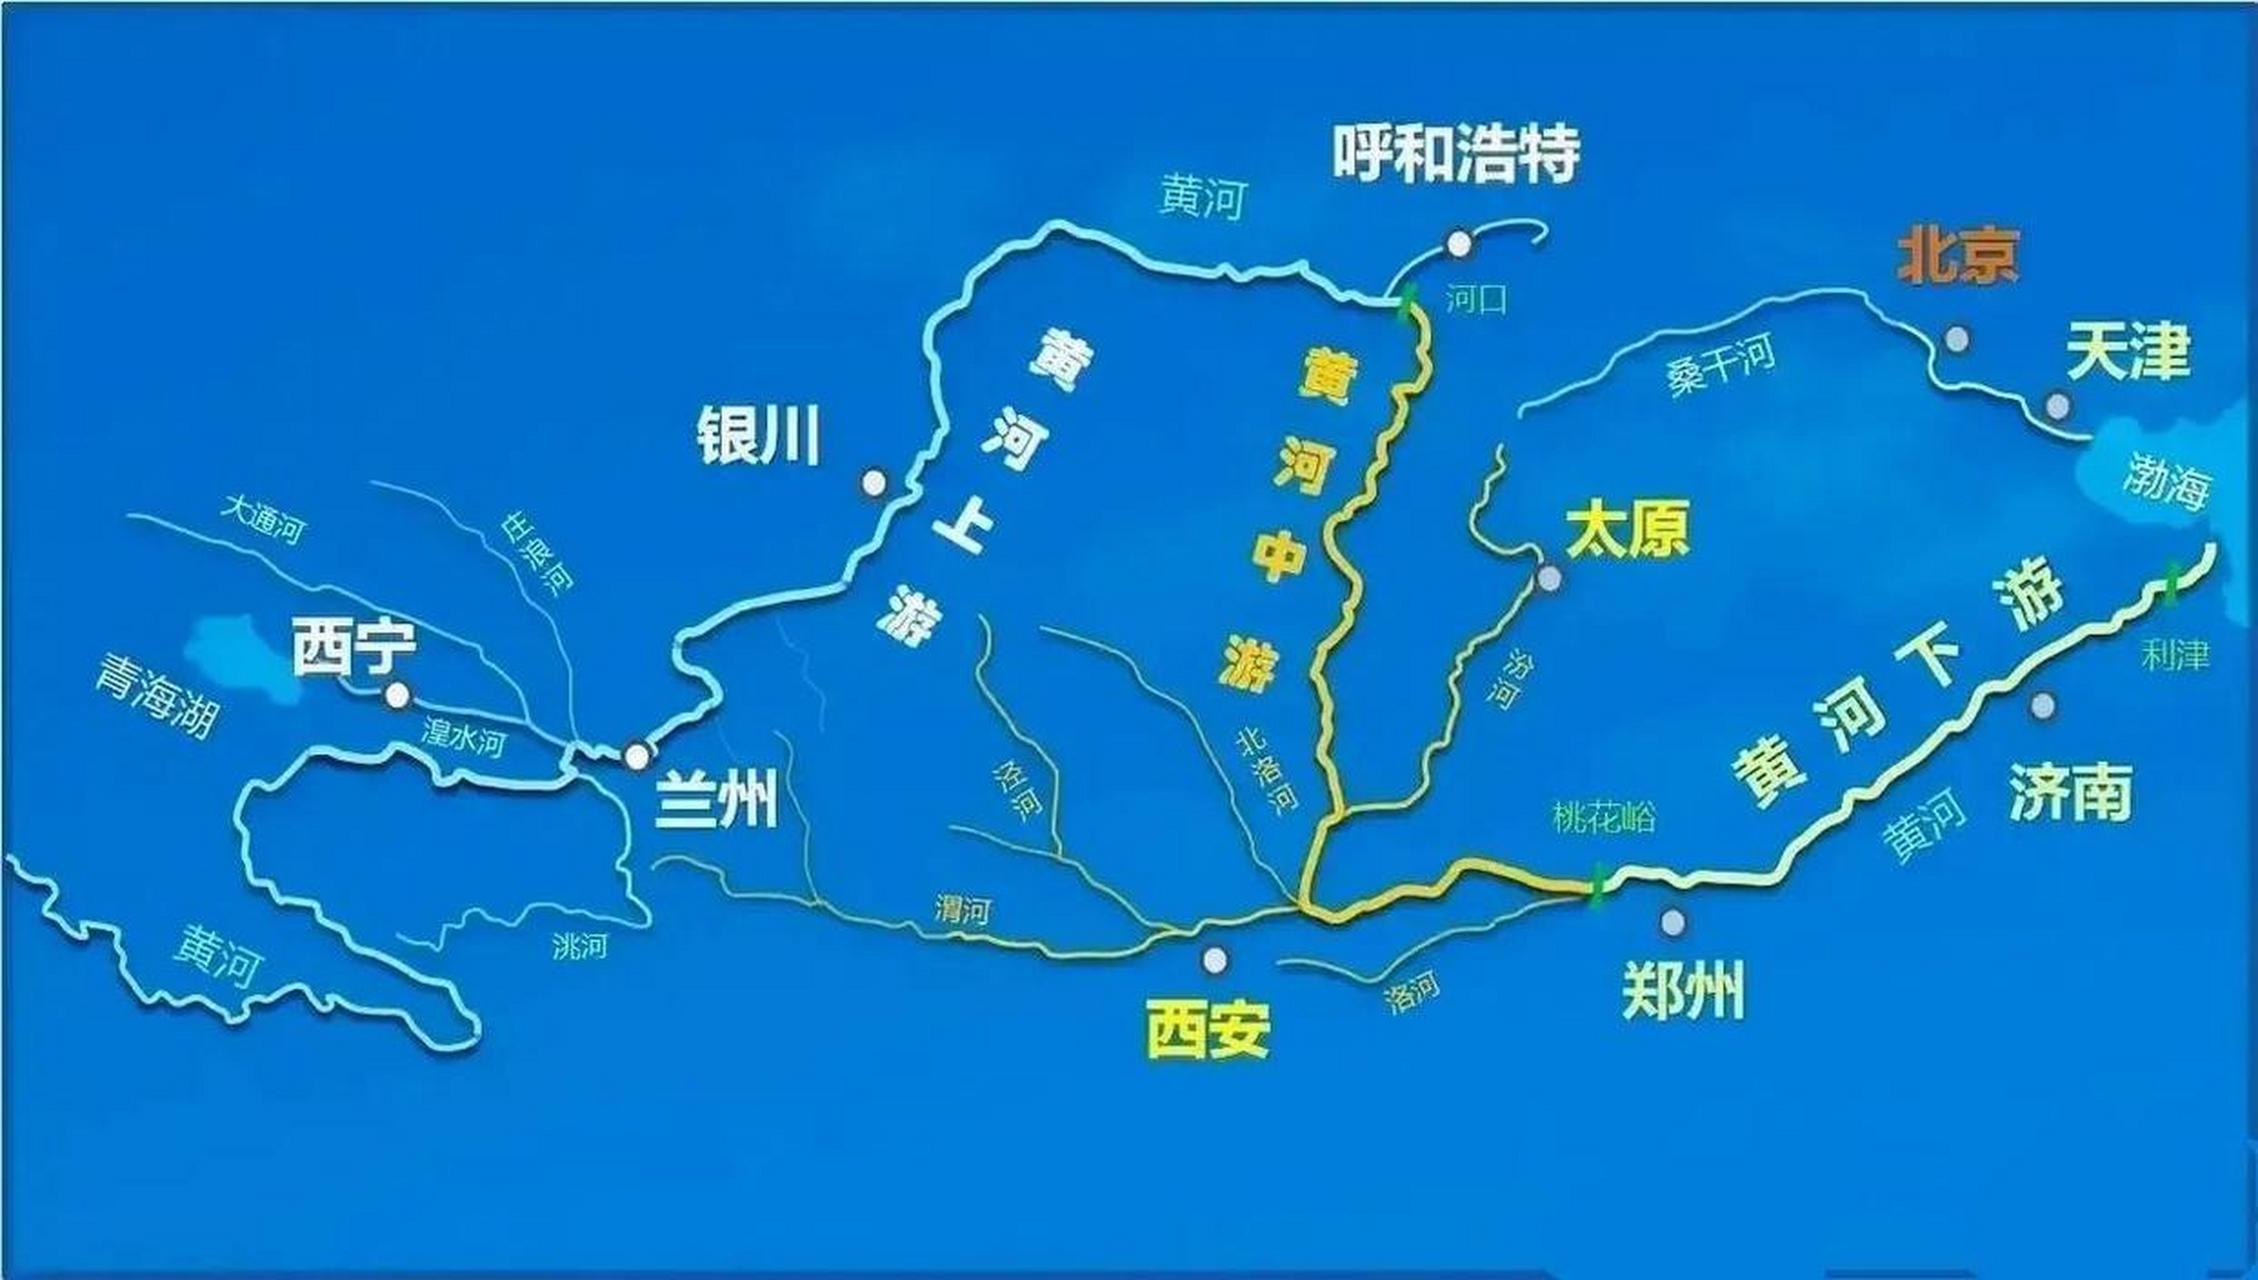 将长江流域和黄河流域的城市对比一下,差距实在是太大了